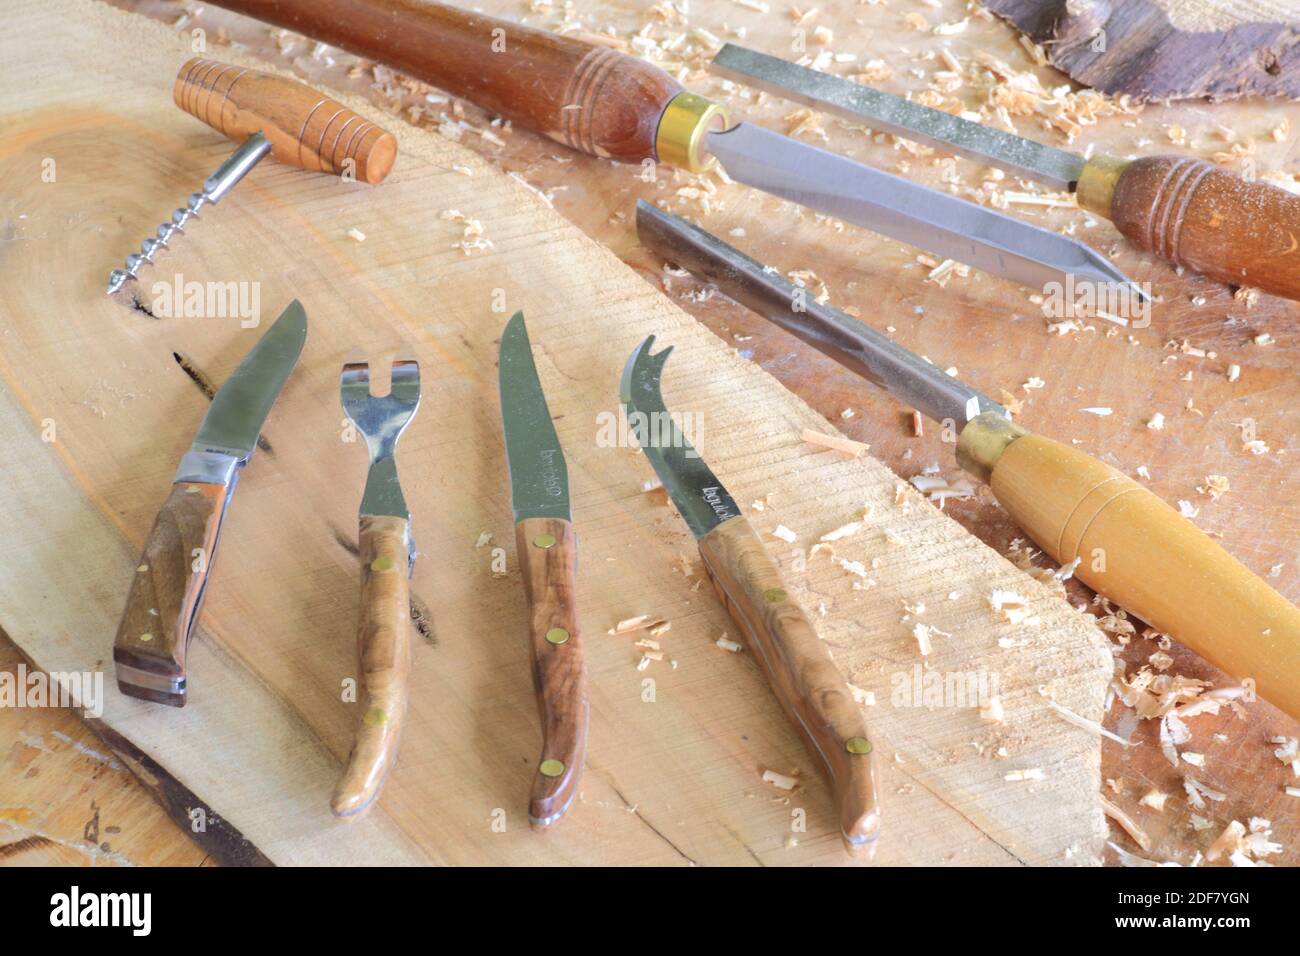 France, Isere, la Sone, atelier de Gerard Ollivet Besson qui fabrique des objets en bois de noyer Banque D'Images